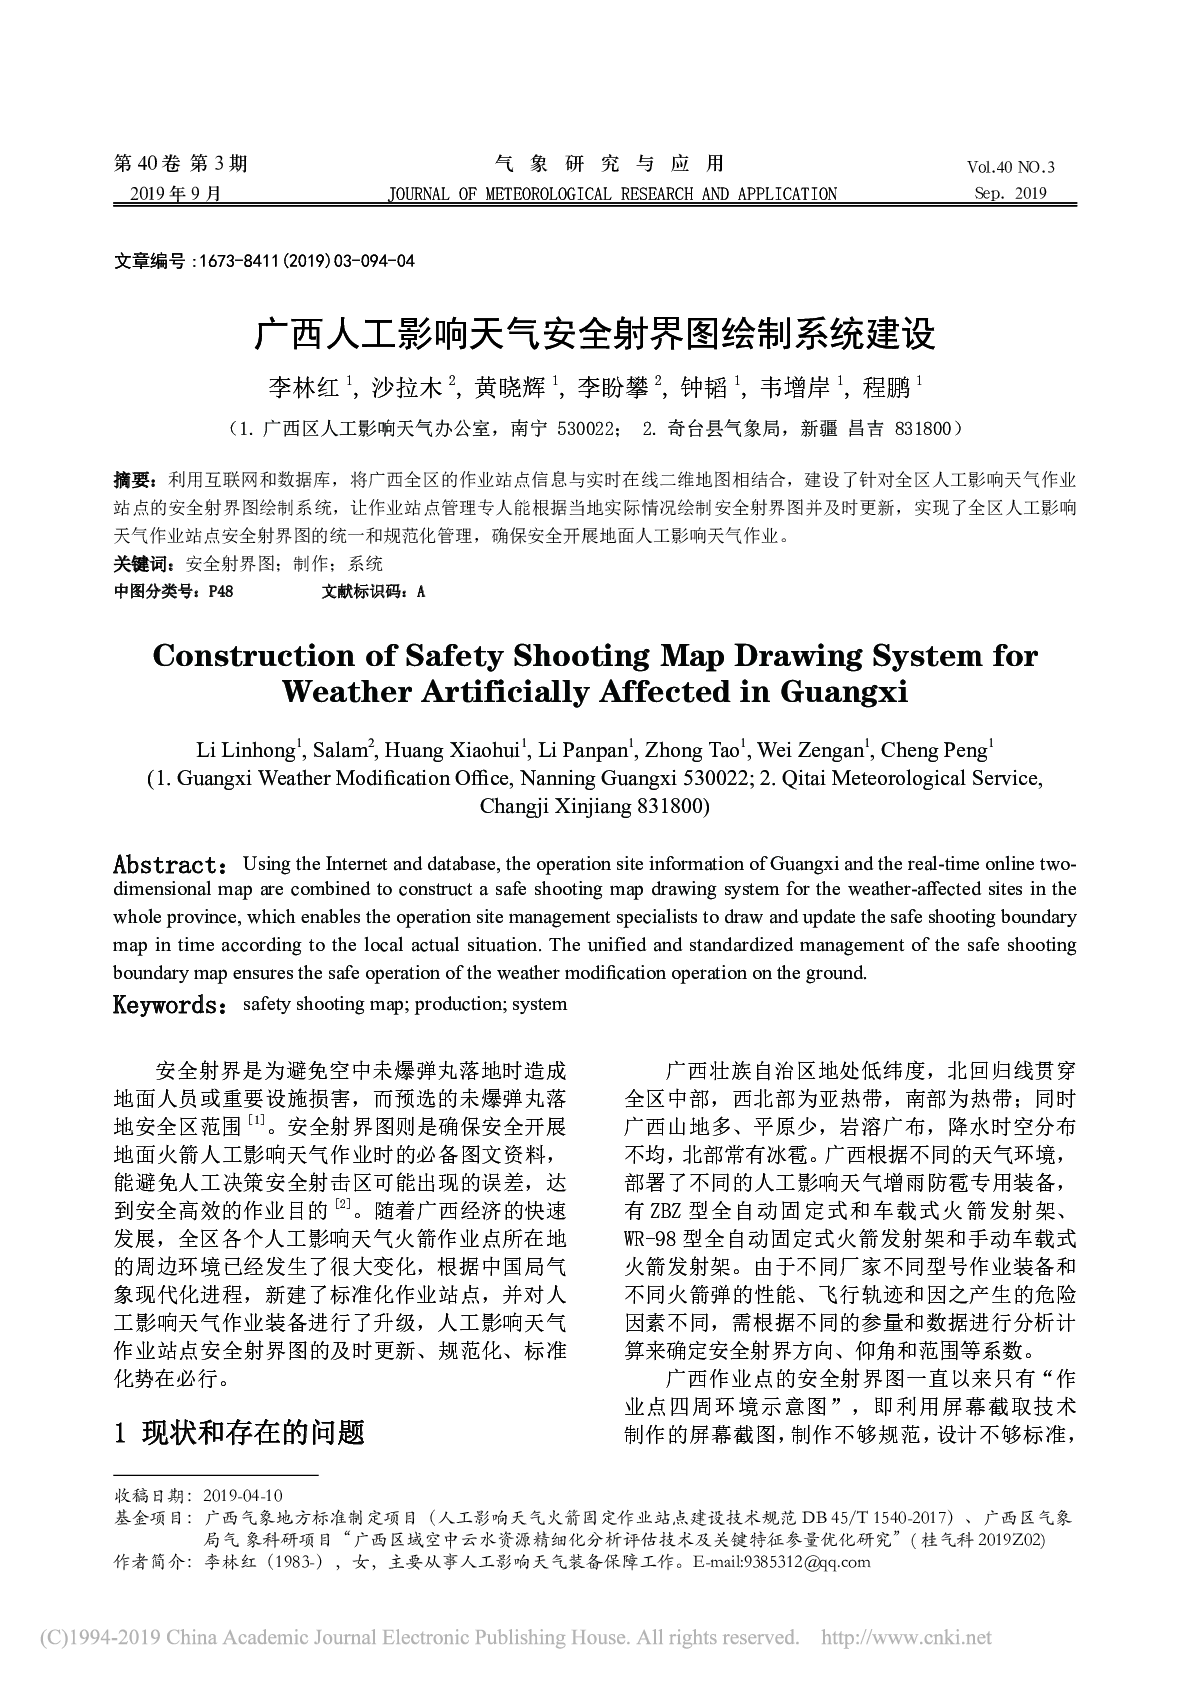 广西人工影响天气安全射界图绘制系统建设